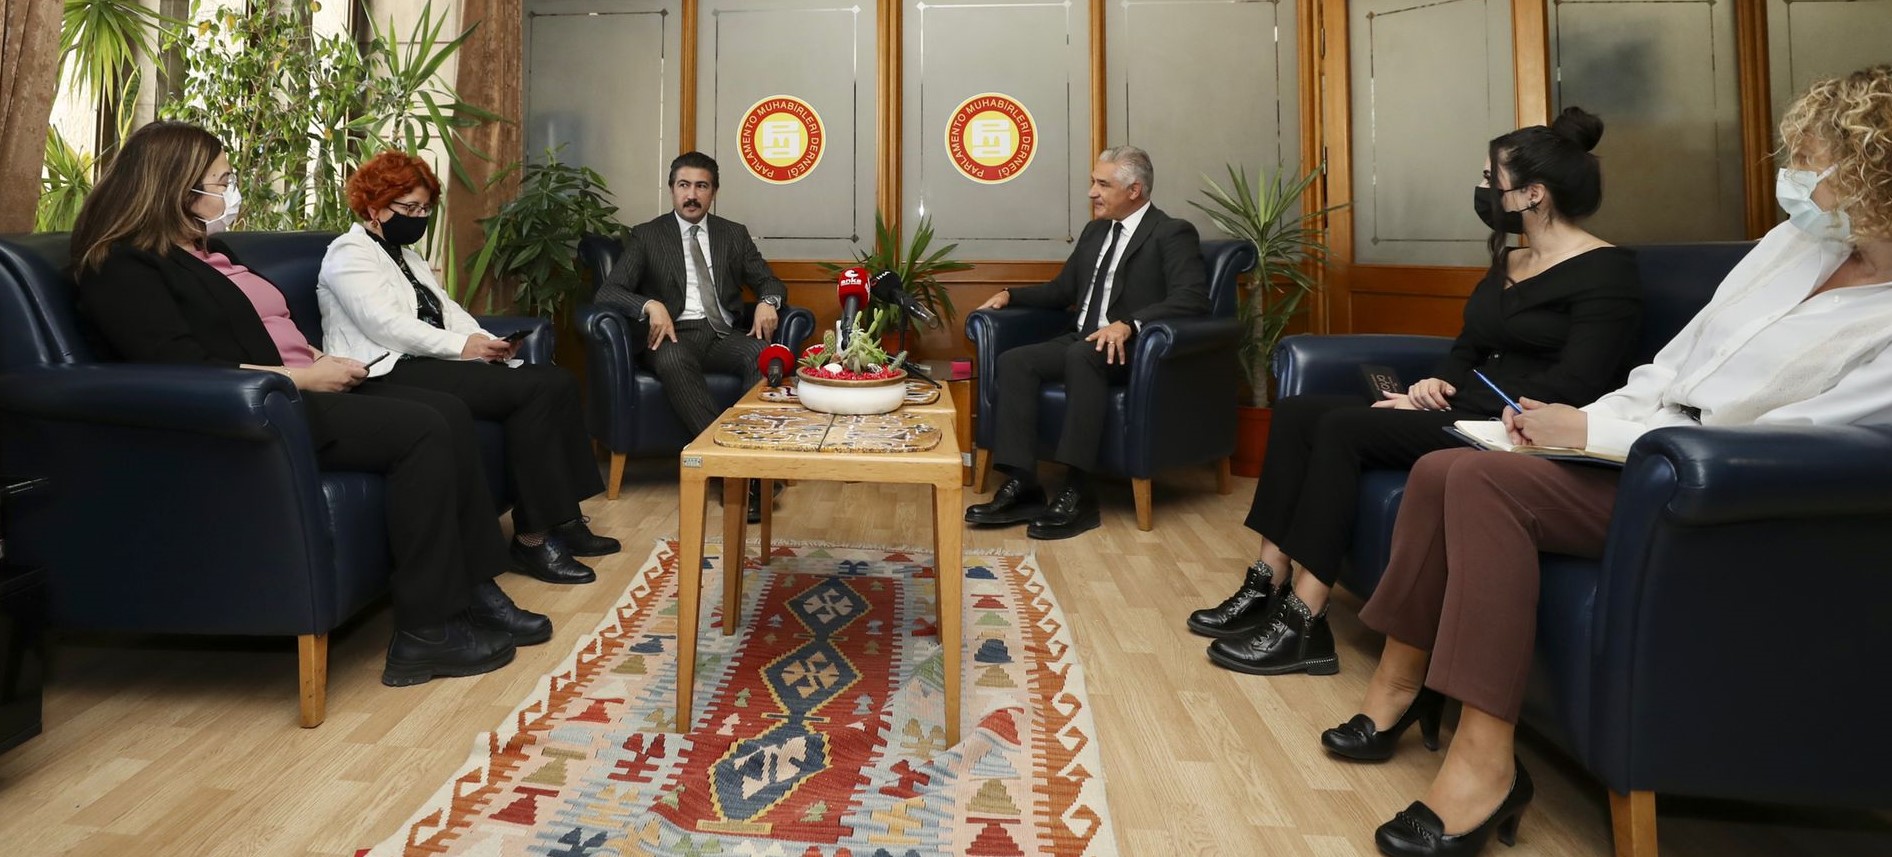 AK Parti Grup Başkanvekili Sayın Cahit Özkan, 21 Ekim Dünya Gazeteciler Gününü kutlamak üzere PMD'yi ziyaret etti. Yeni yönetime başarılar dileyen Özkan, sıcak gündeme ilişkin değerlendirmelerde de bulundu.  